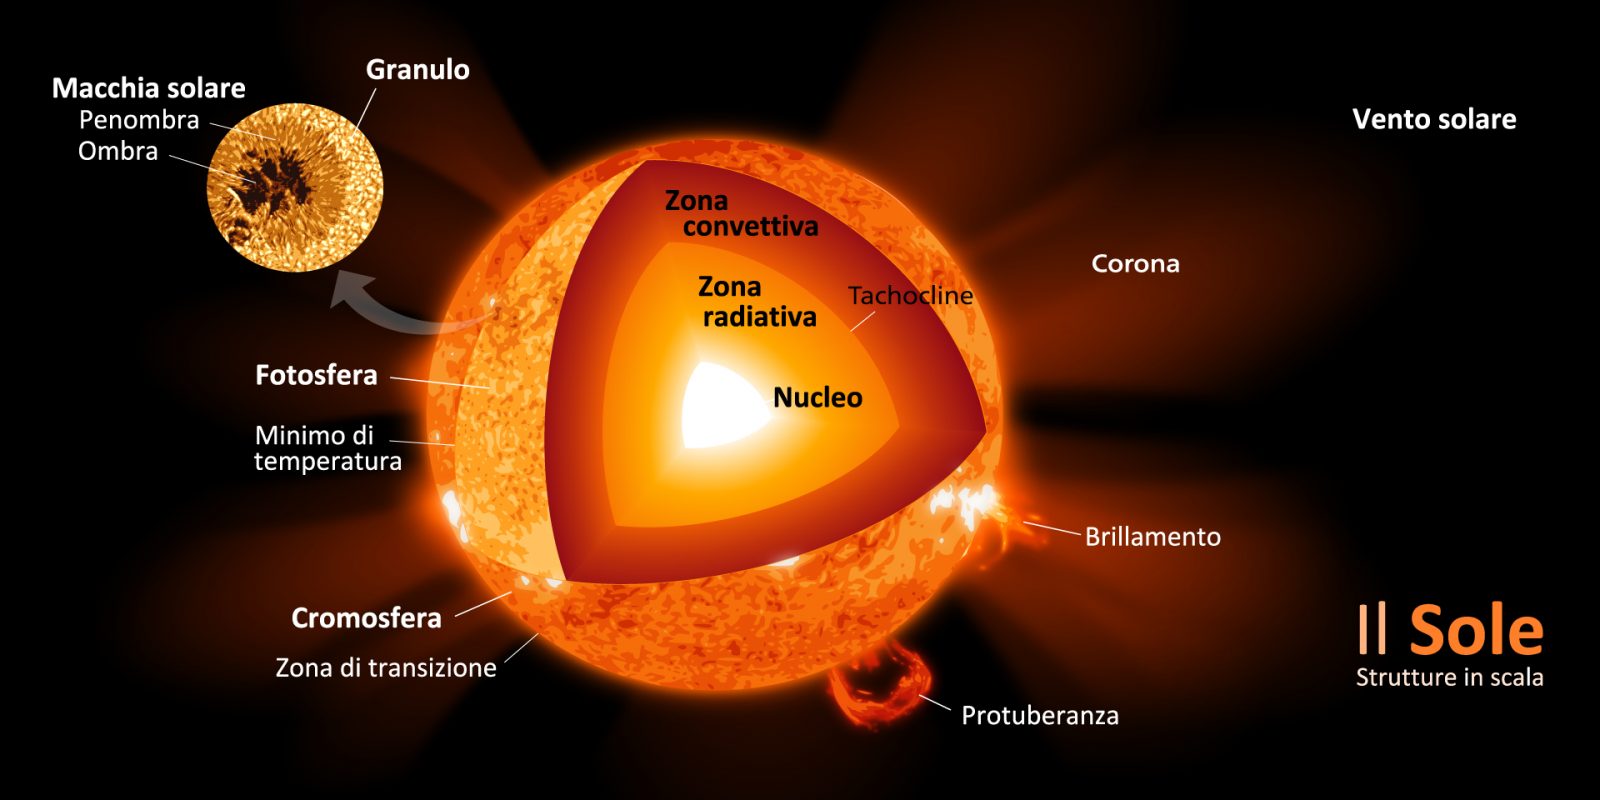 La struttura interna del Sole